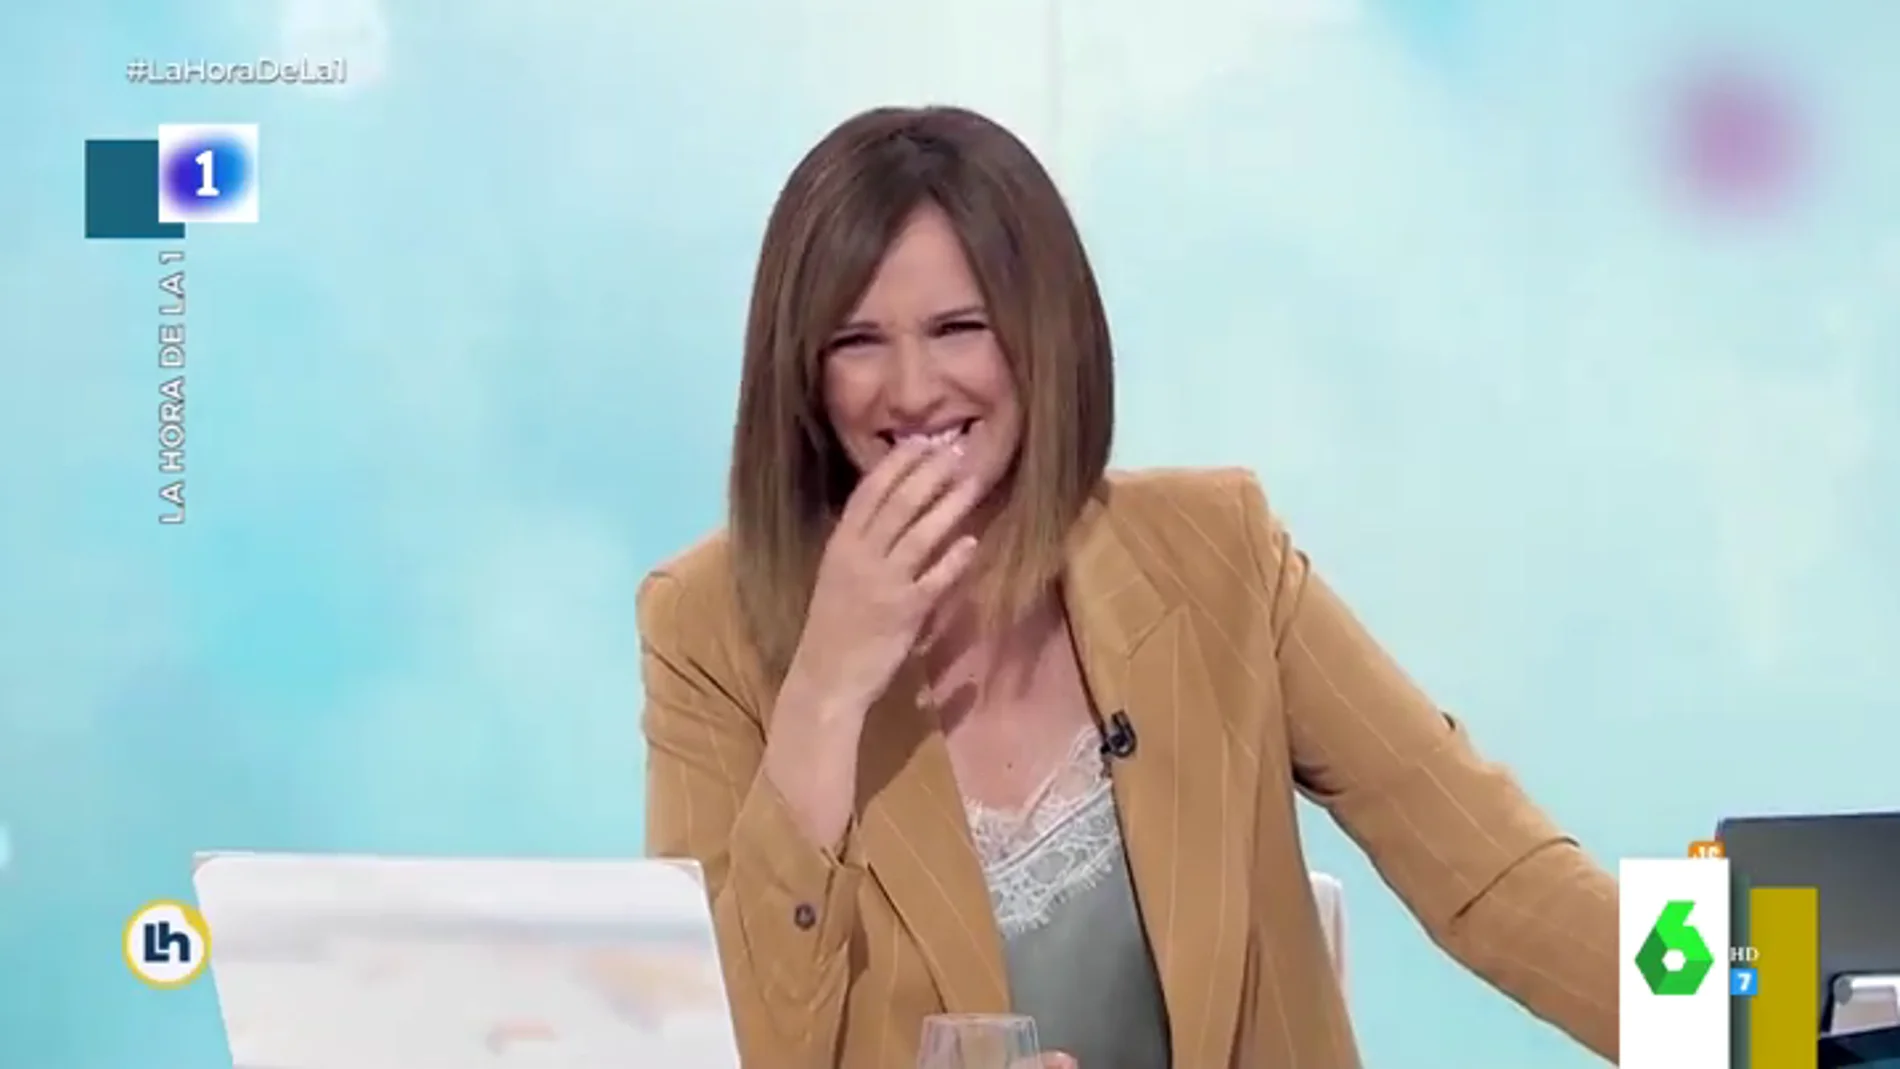 El ataque de risa viral de la presentadora Mónica López al aparecer una marmota gigante en plató